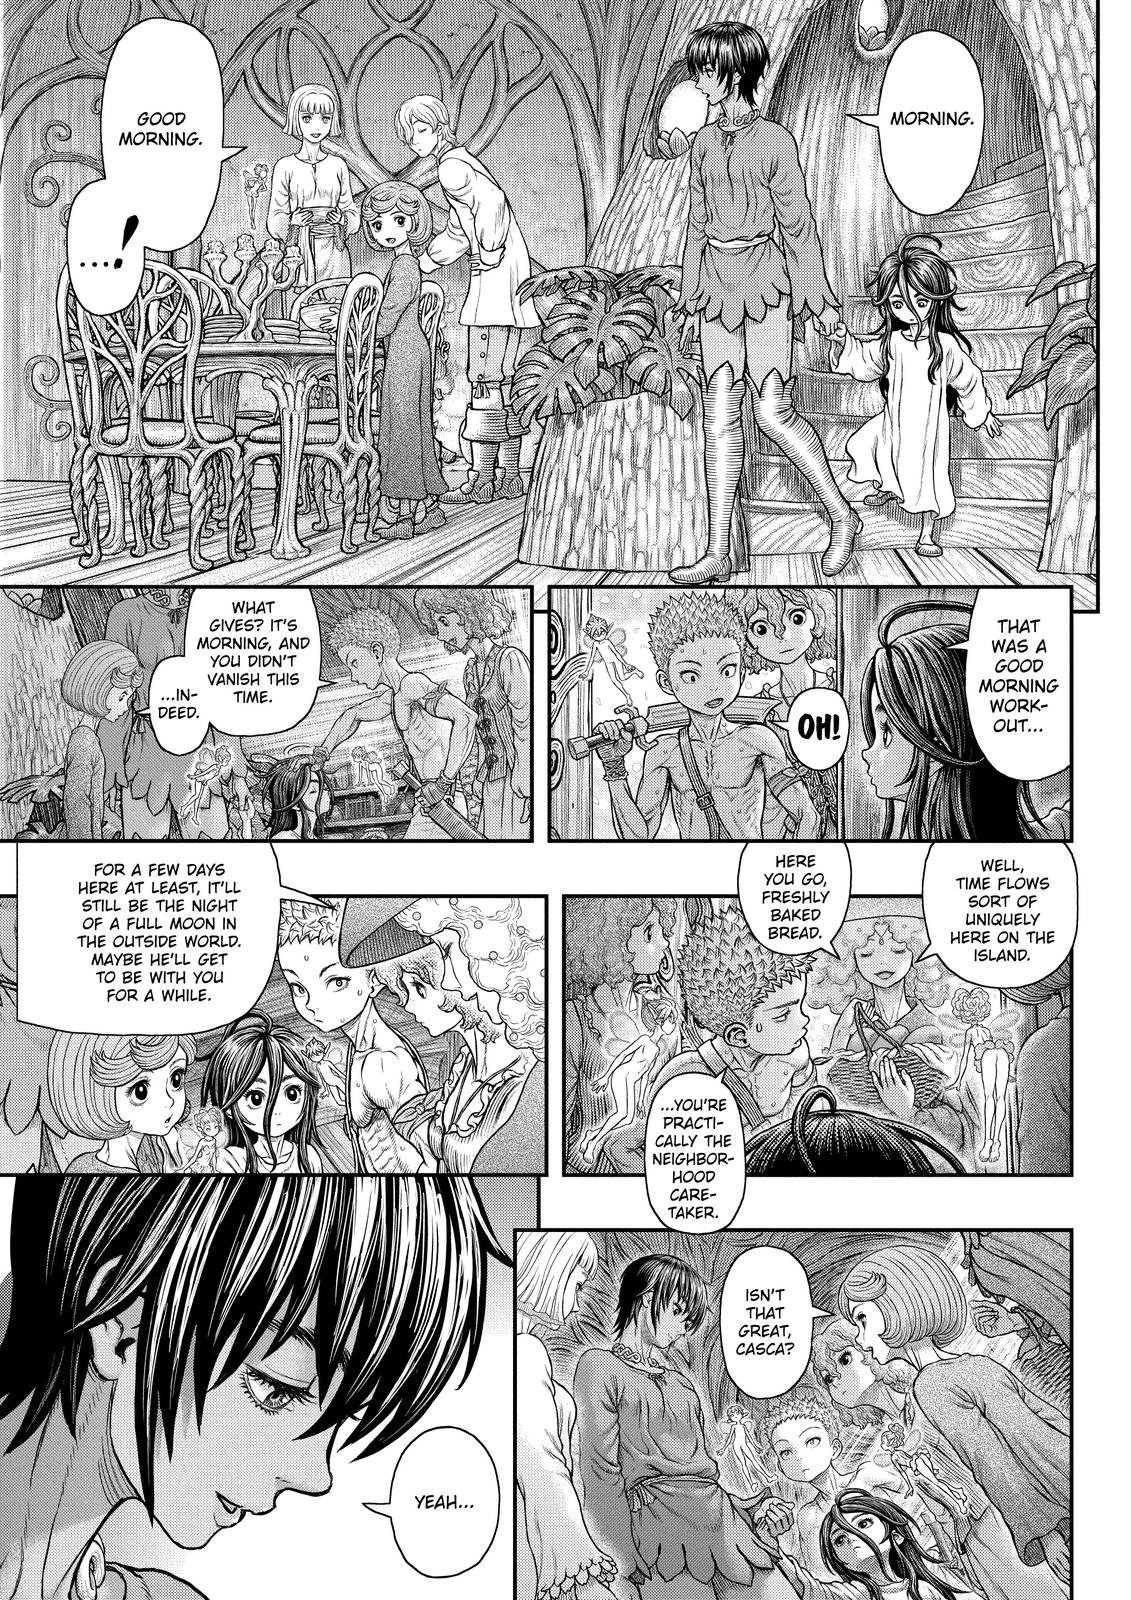 Berserk Manga Chapter 364 image 11